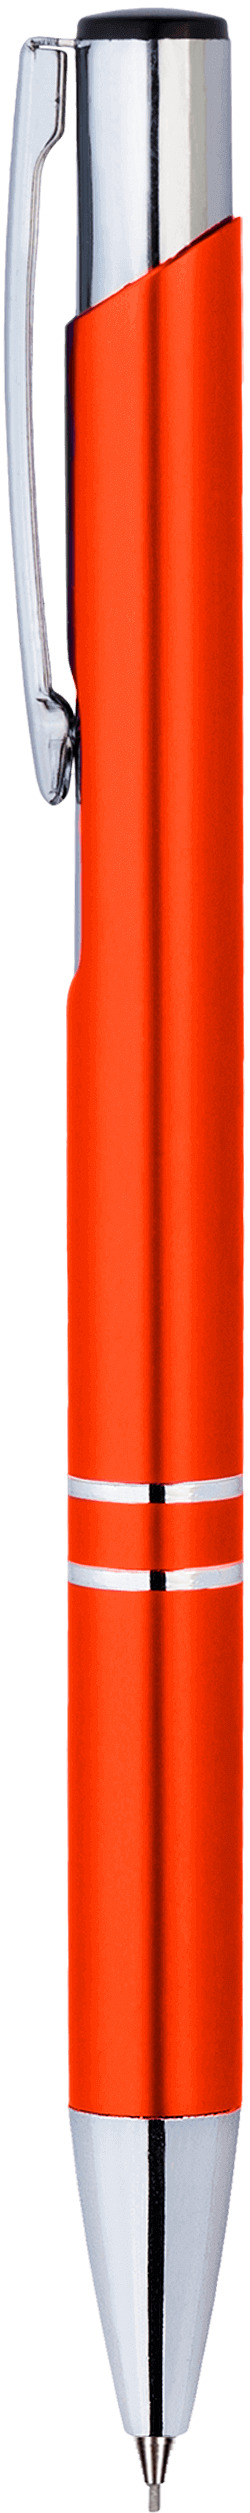 Карандаш механический KOSKO, оранжевый